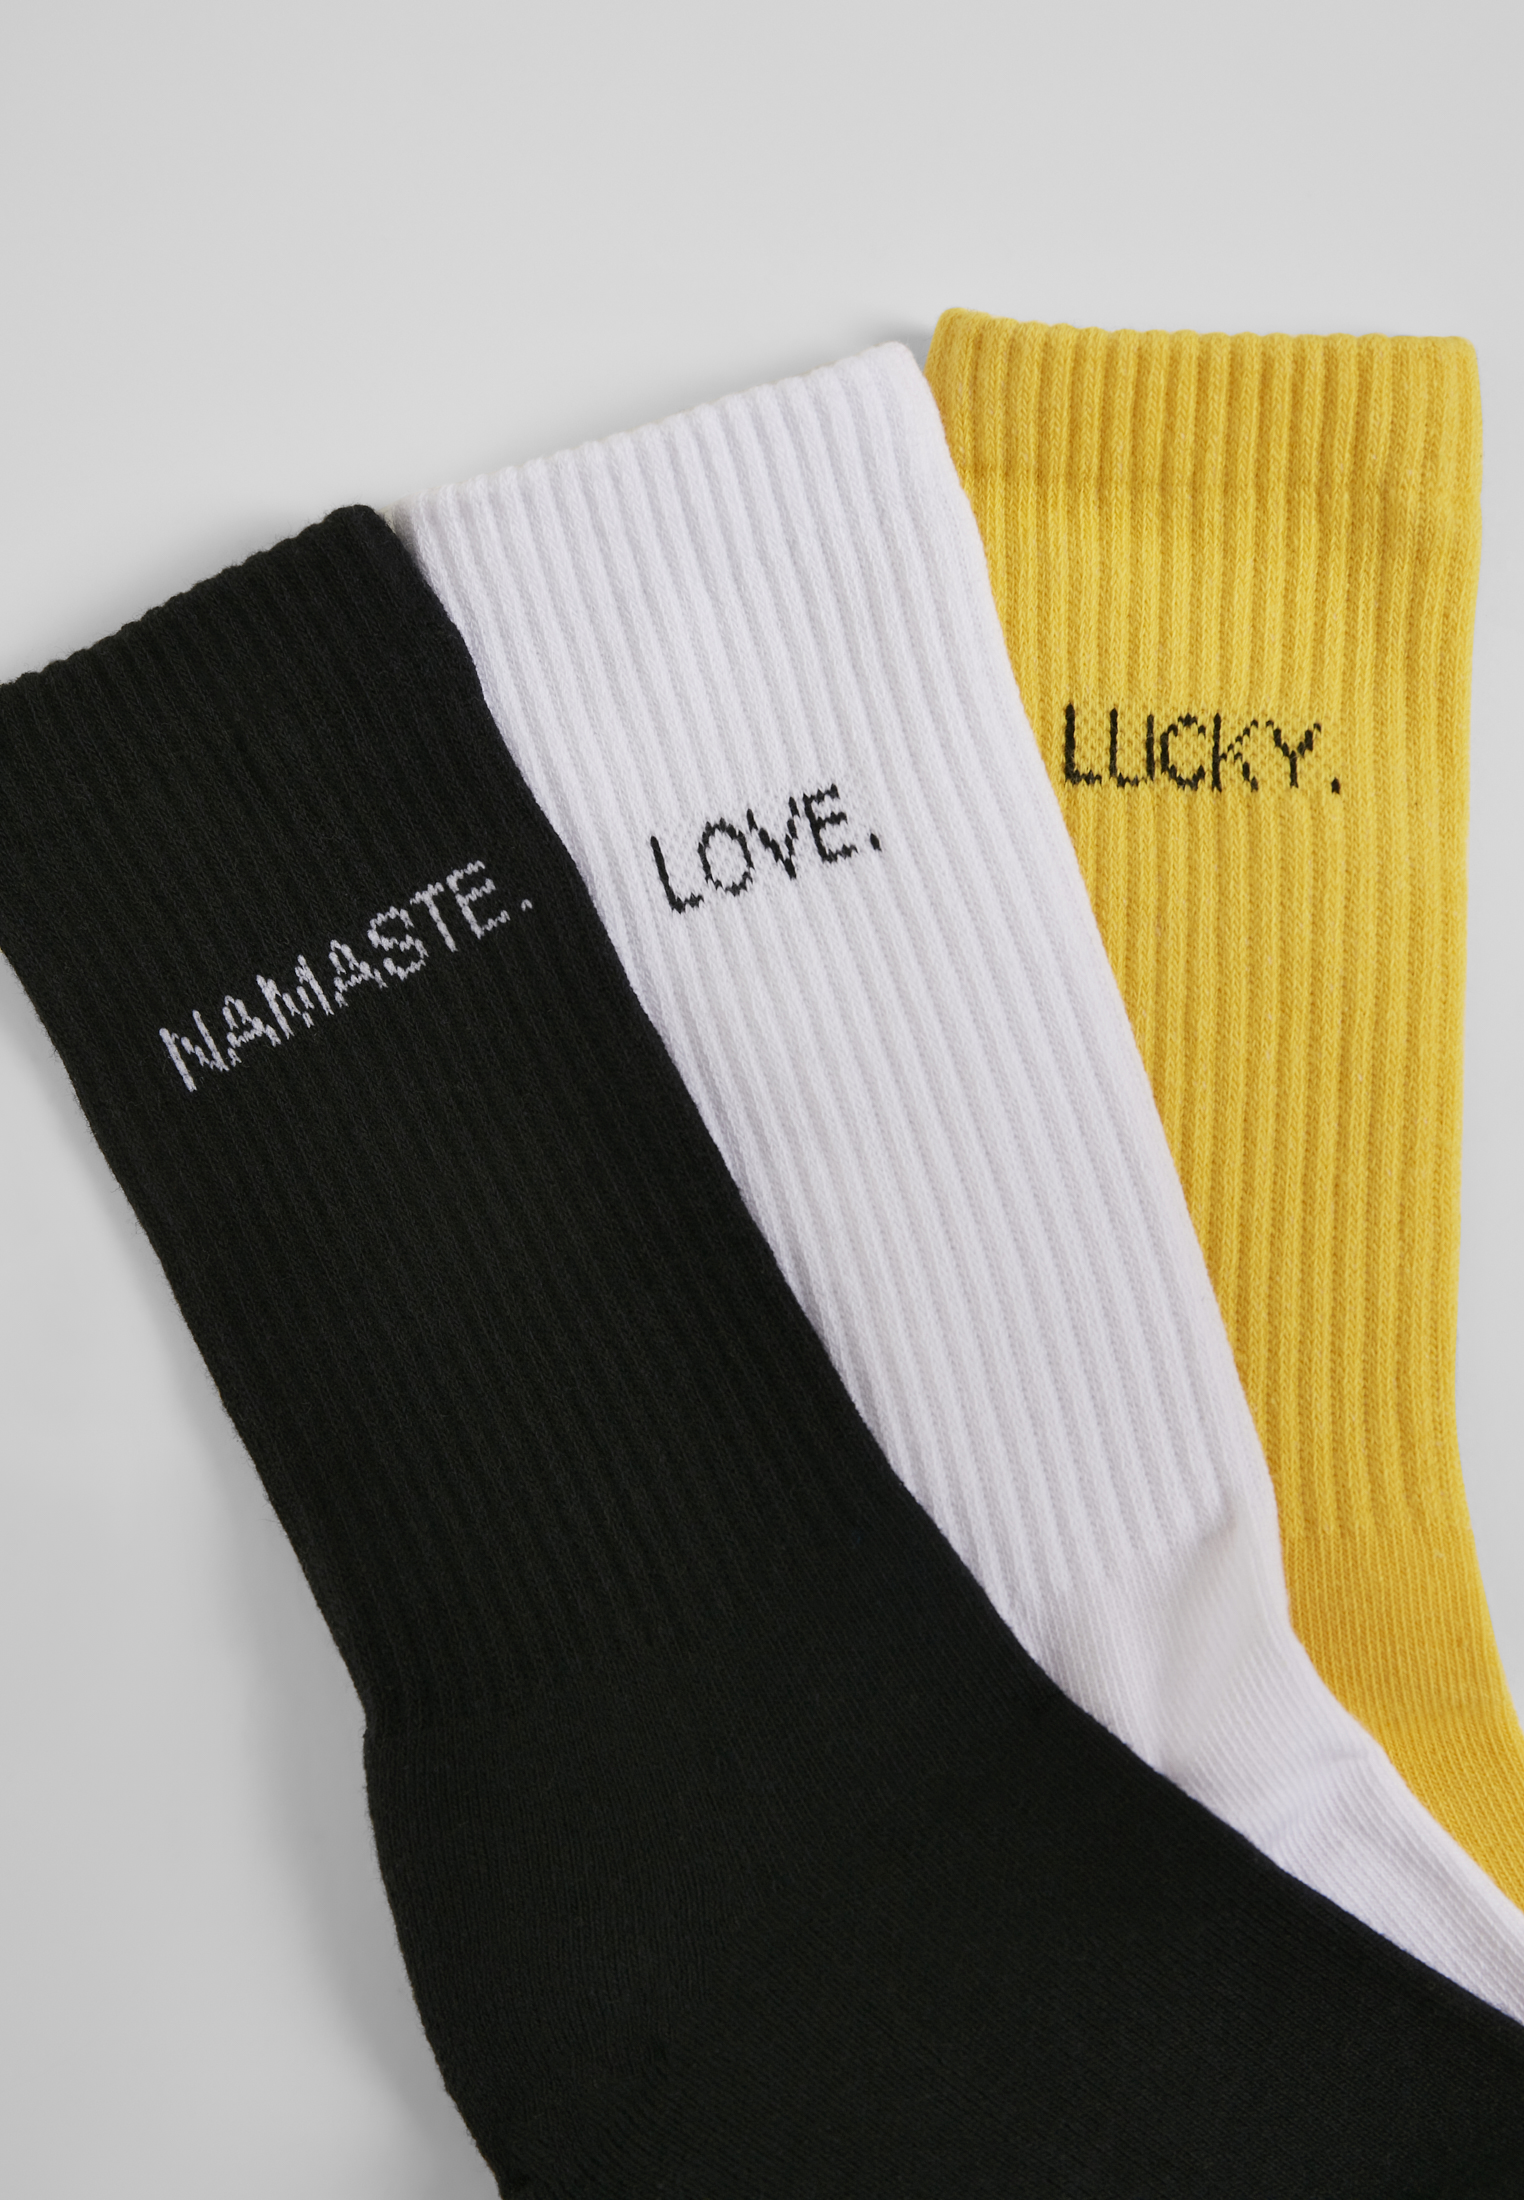 Socken Wording Socks 3-Pack in Farbe black/white/yellow